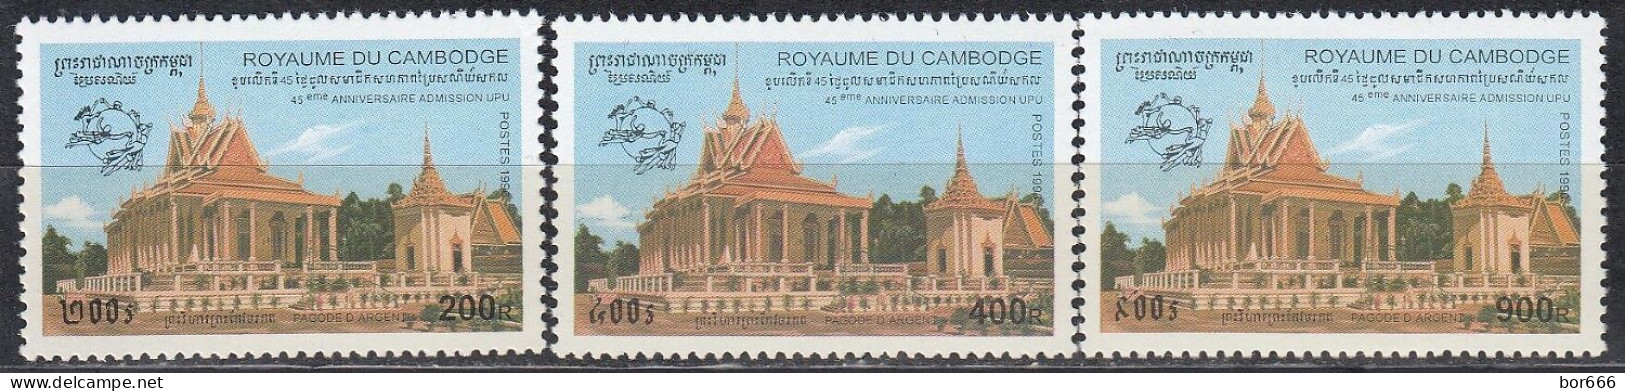 Kampuchea - UPU 1996 MNH - Kampuchea